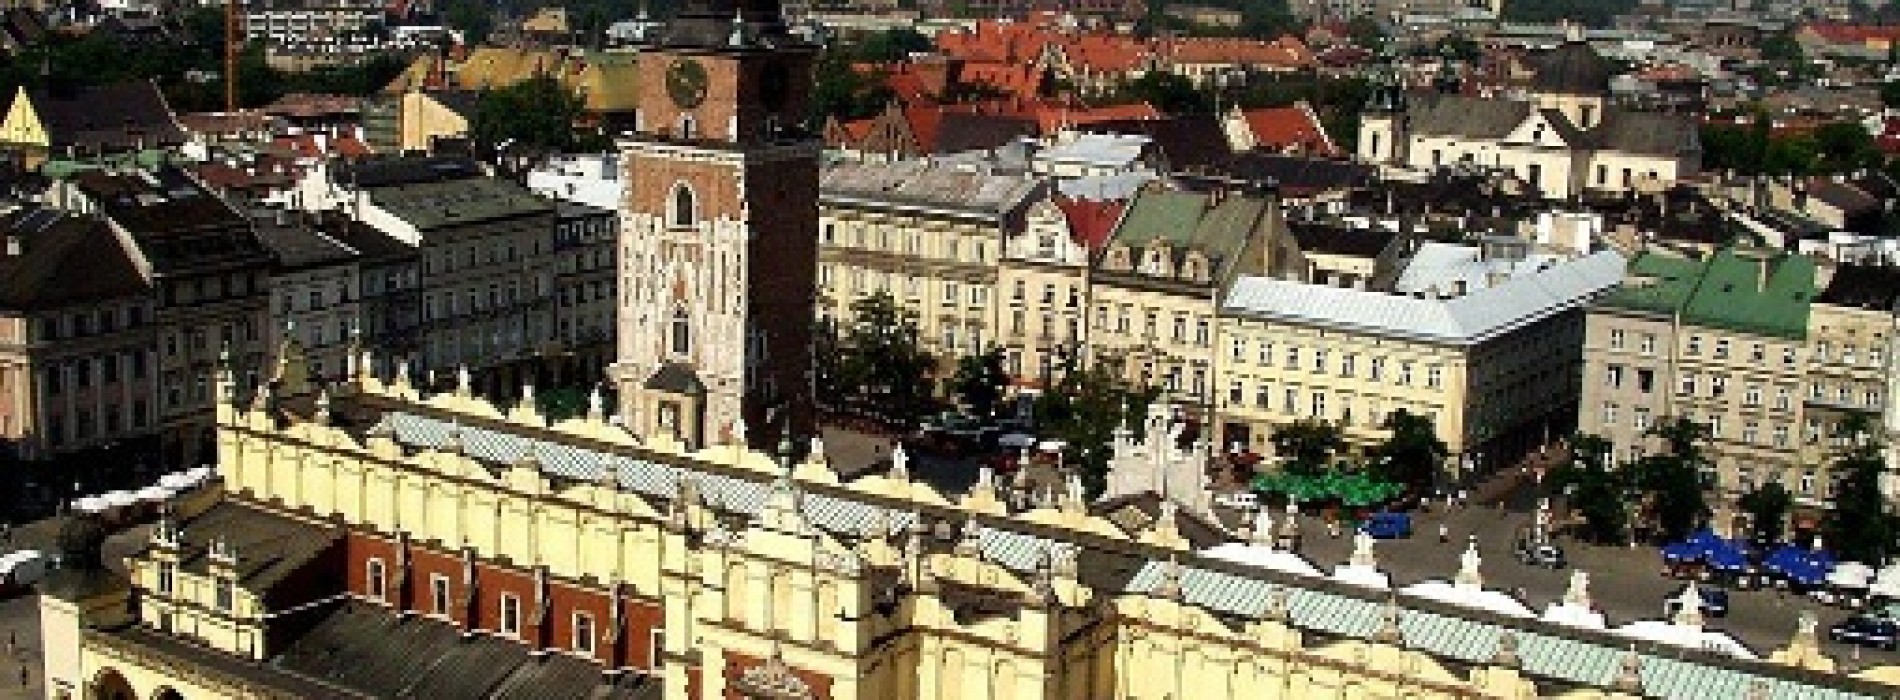 Wiosna na rynku mieszkaniowym w Krakowie